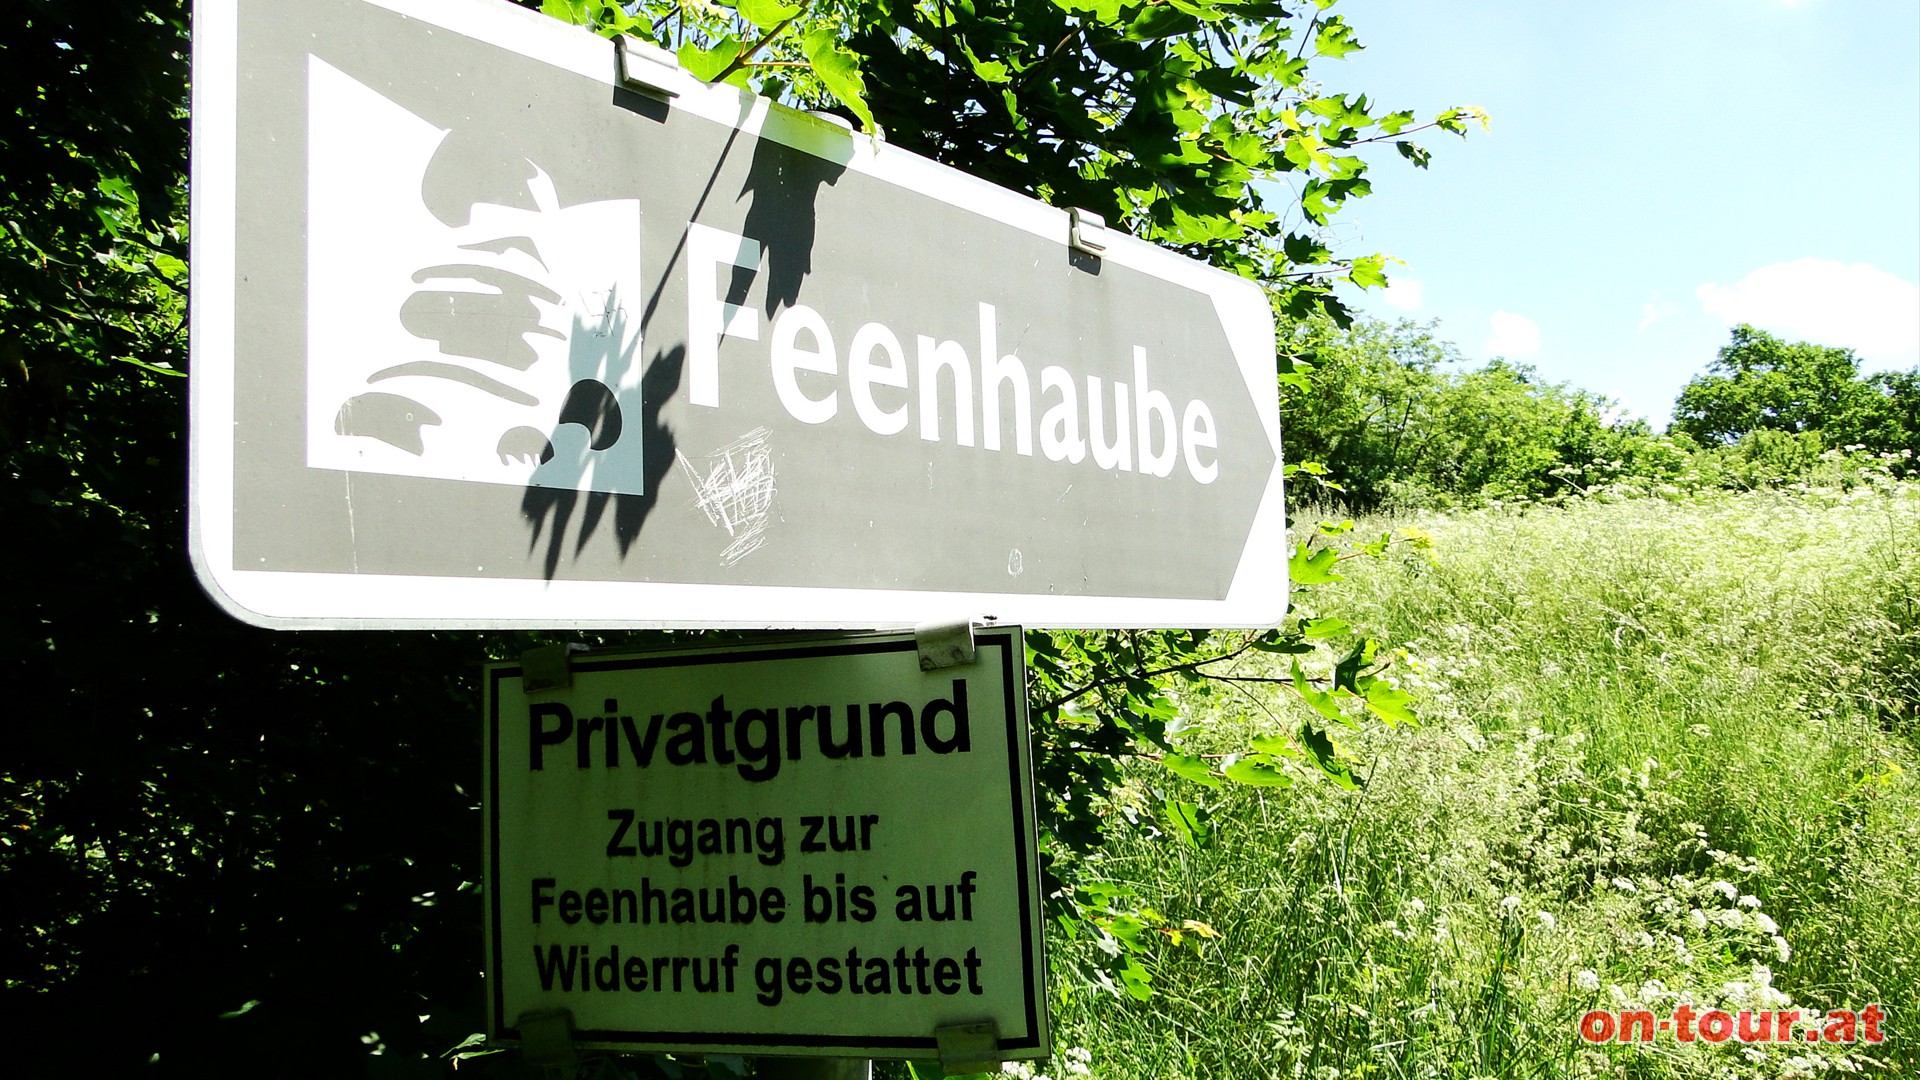 Wieder hinunter zum Weg und neben dem Naturdenkmal -Heideflche- bis zum Abzweig -Feenhaube-.